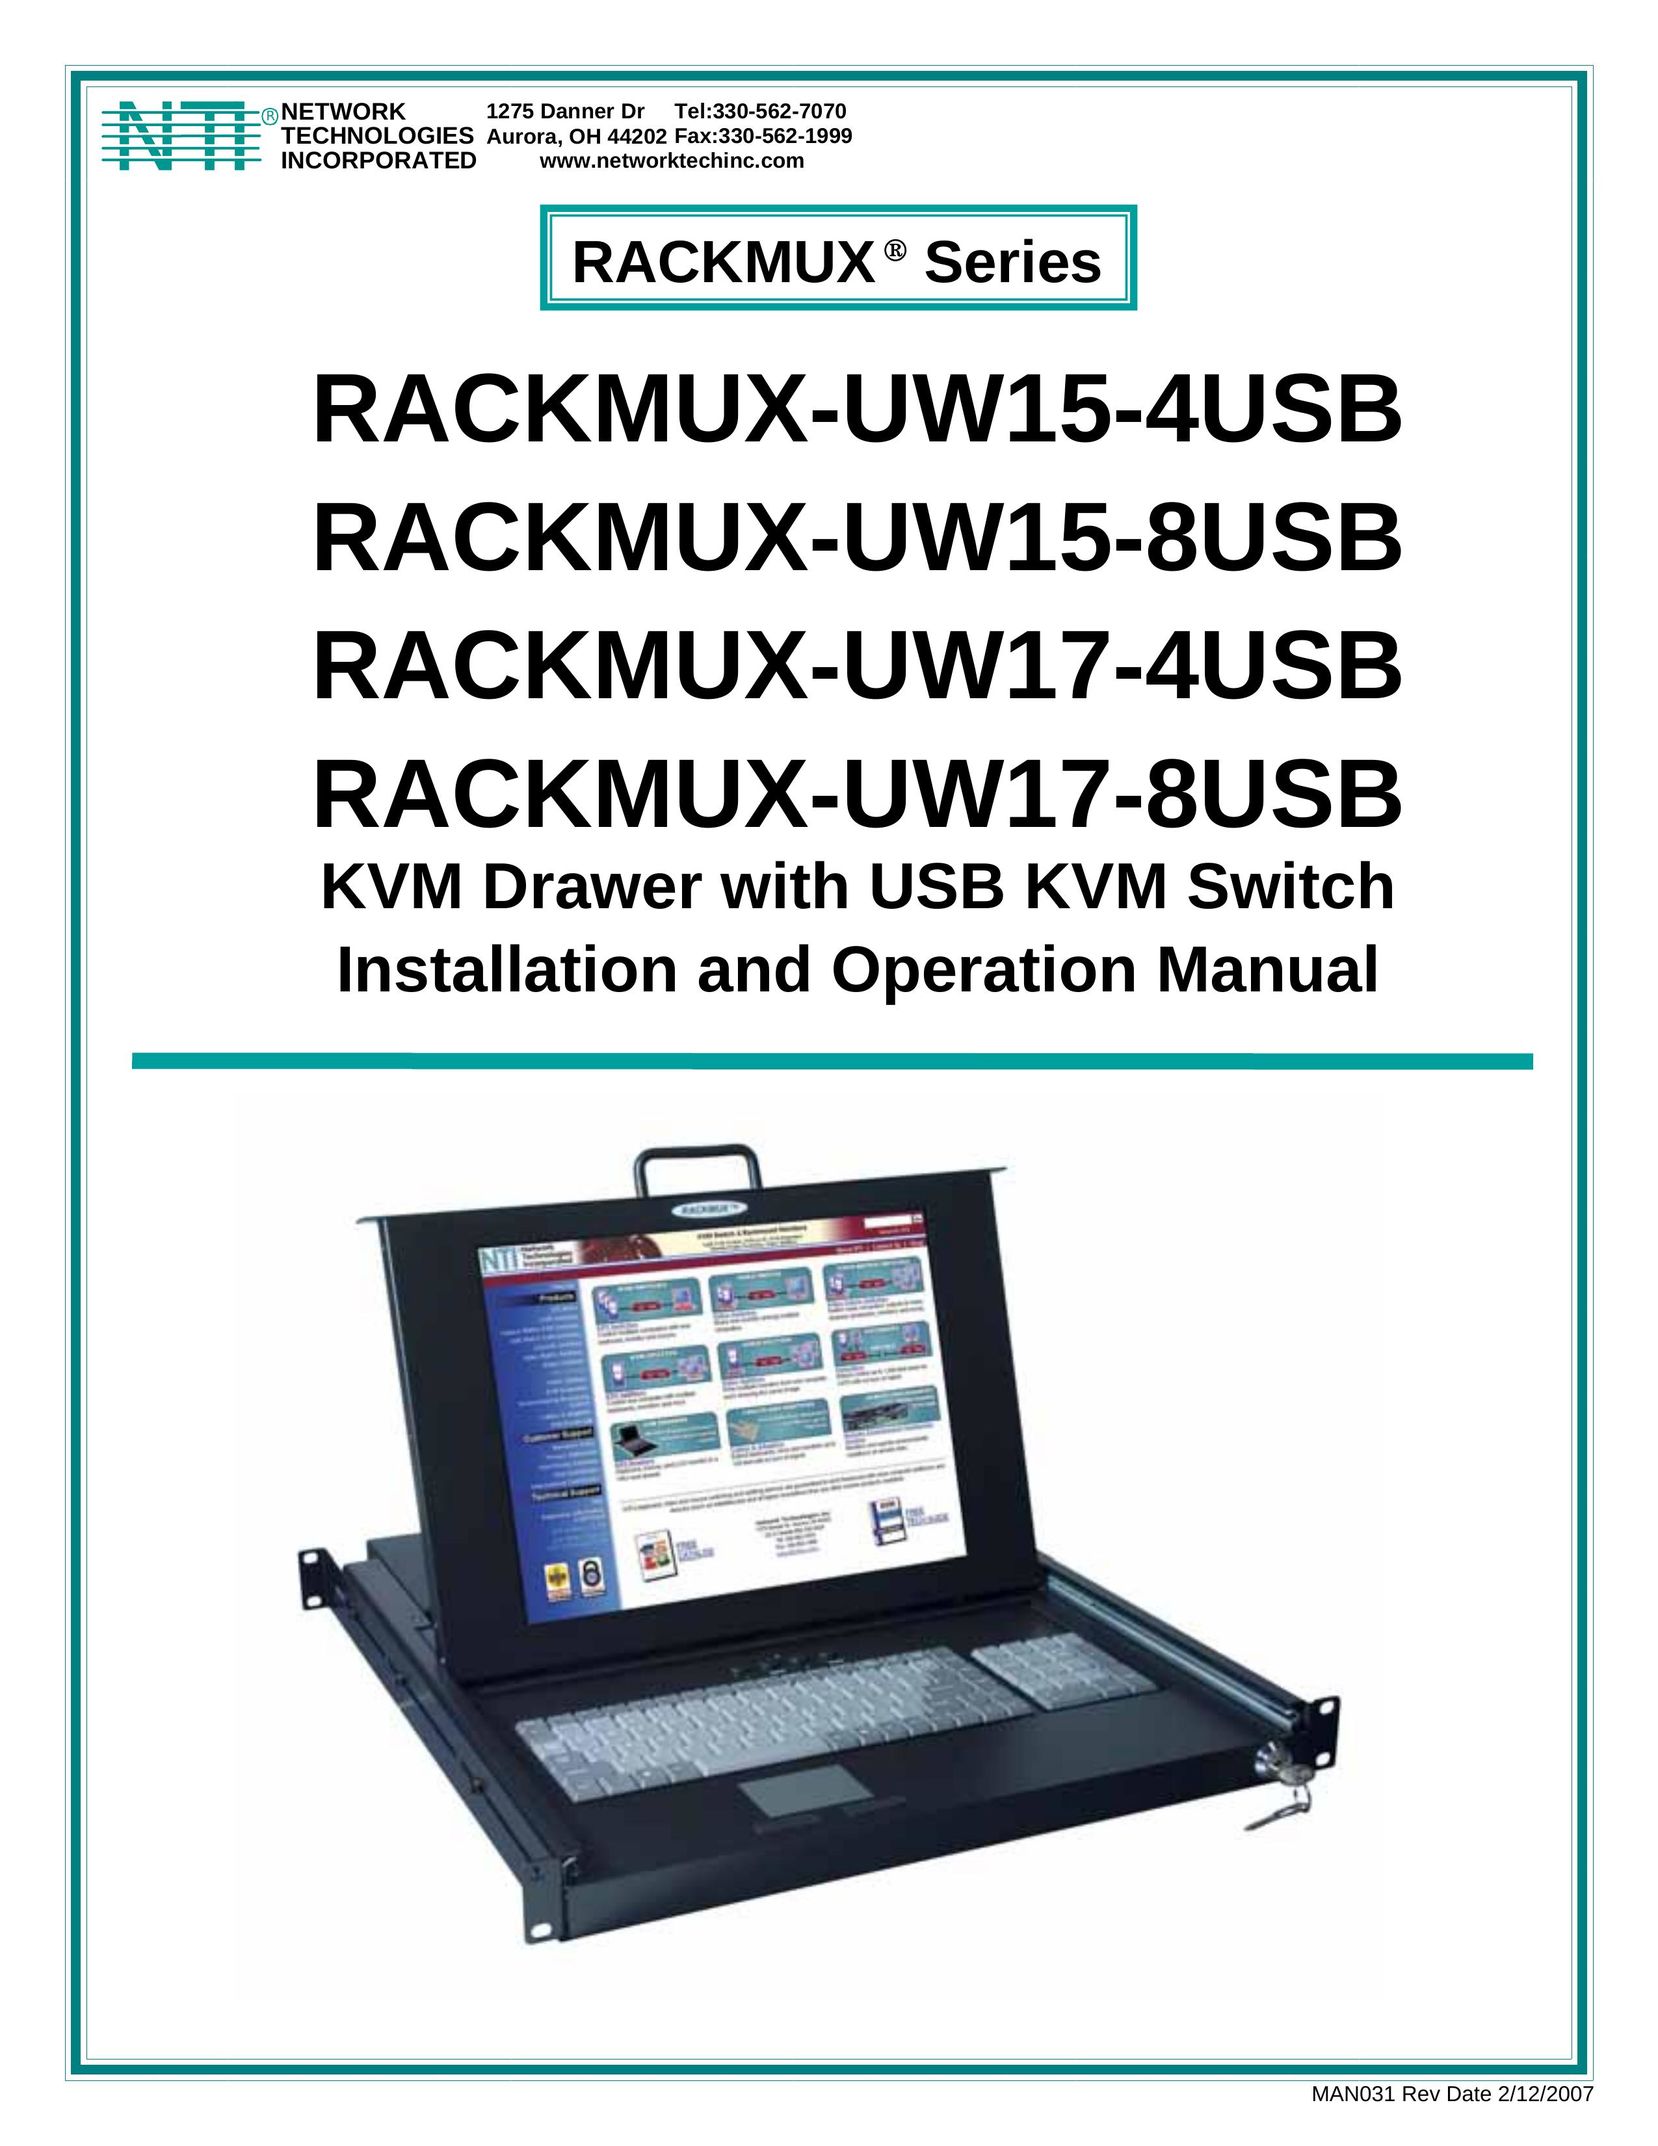 Network Technologies RACKMUX-UW15-4USB, RACKMUX-UW15-8USB, RACKMUX-UW17-4USB, RACKMUX-UW17-8USB Switch User Manual